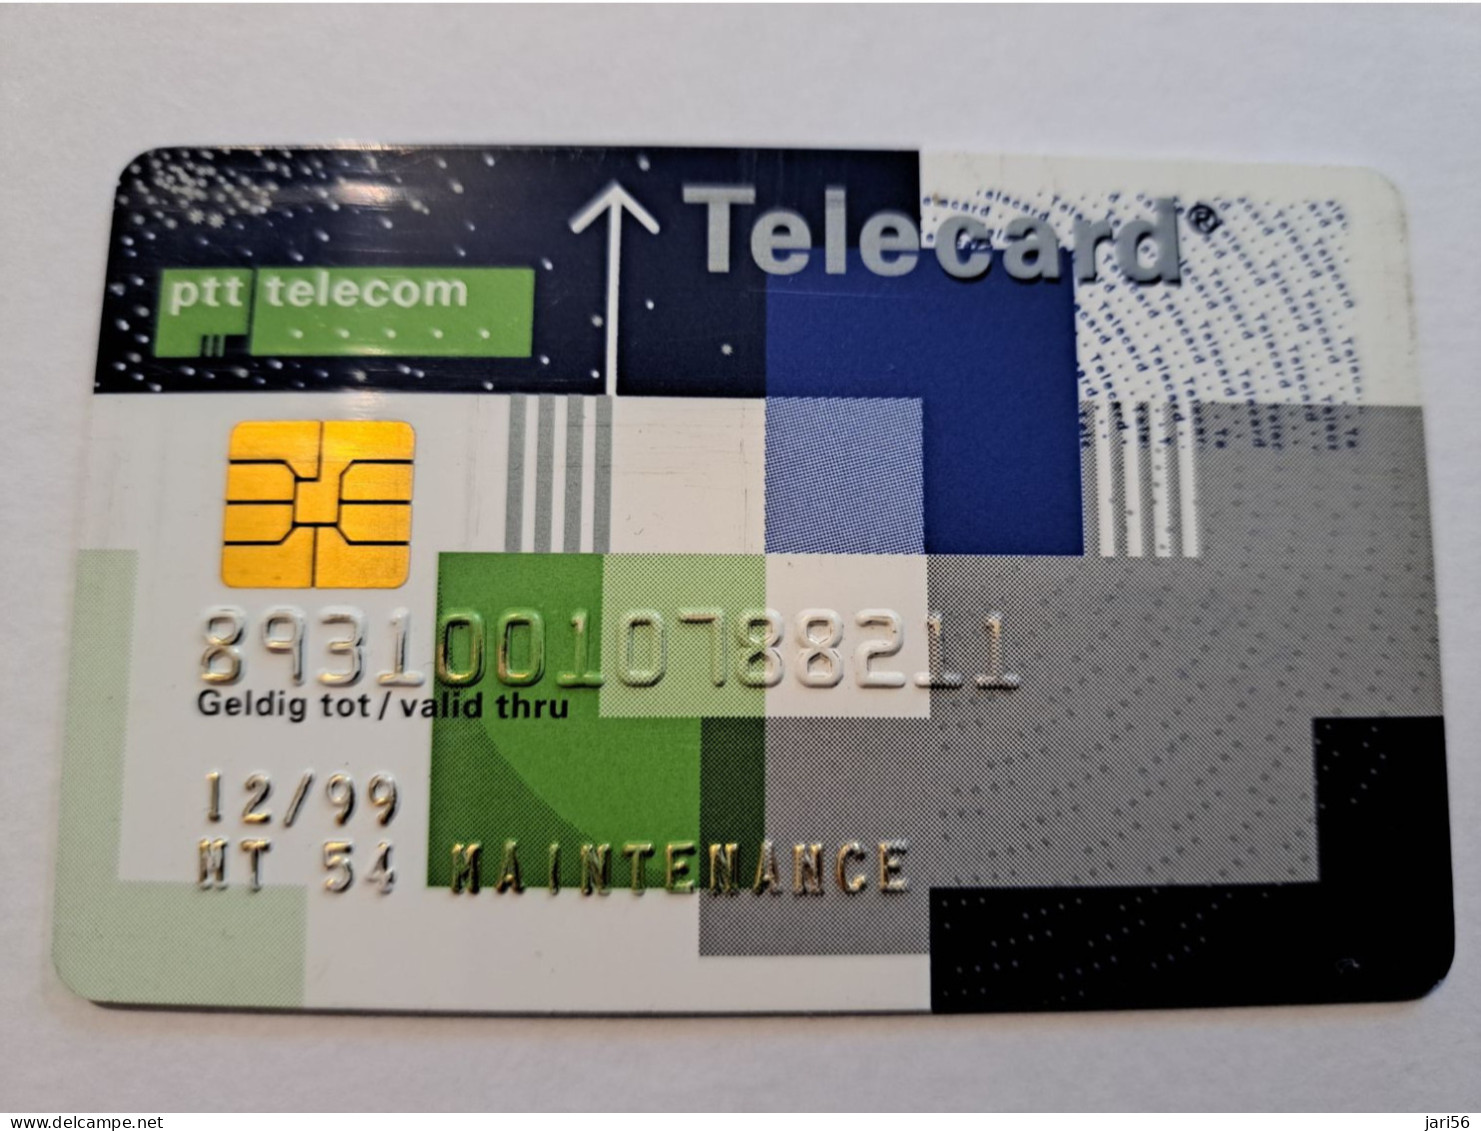 NETHERLANDS  /CHIPCARD/ MAINTENANCE  PTT TELECOM/TELECARD/ VERY RARE !!  / DATE 12/99   ** 16305** - [4] Test & Services